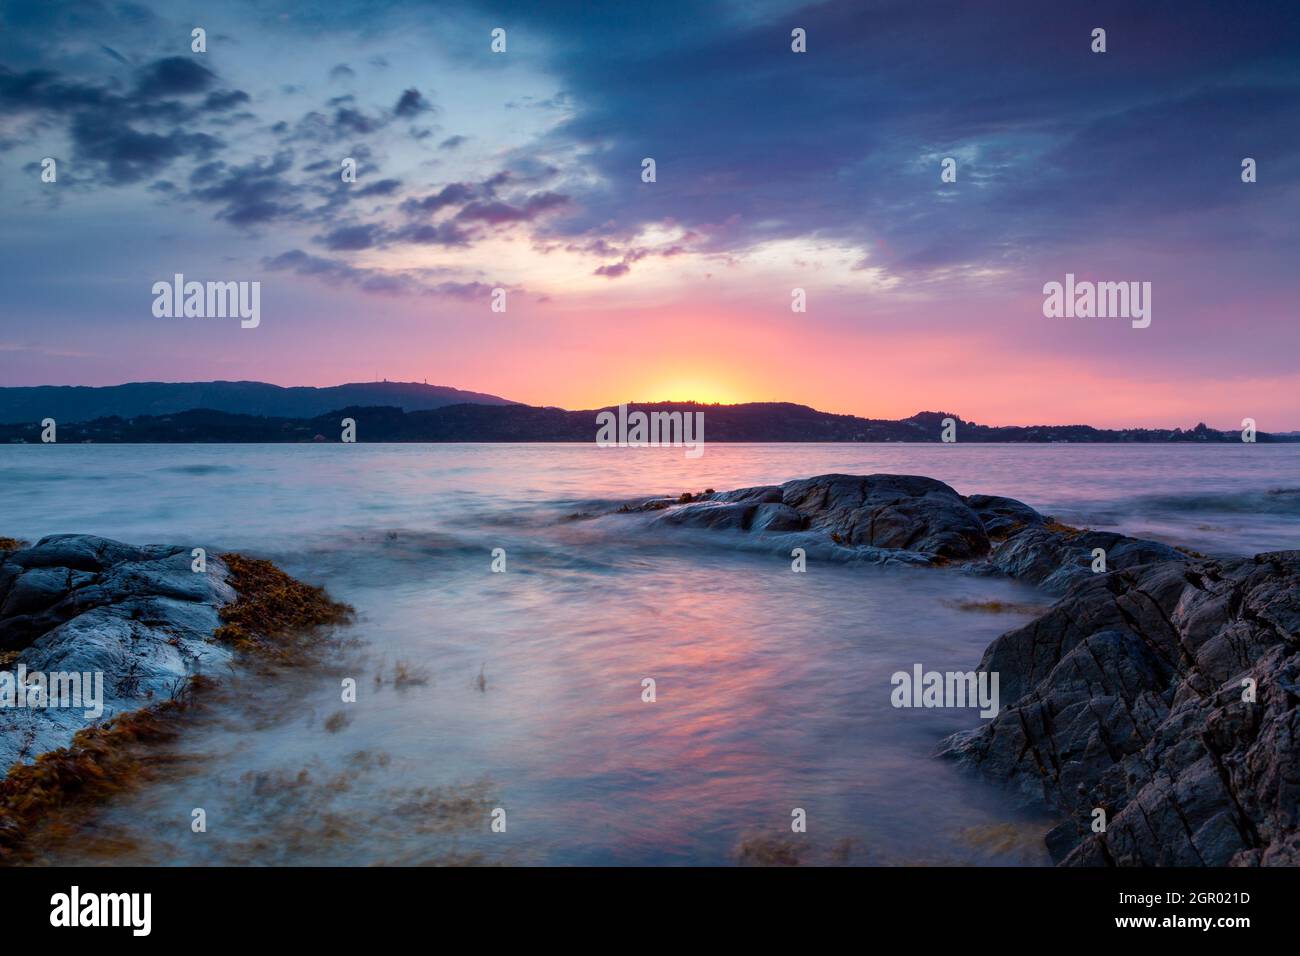 Sunset over sea in west Norway. Norwegian coast in Bergen. Stock Photo